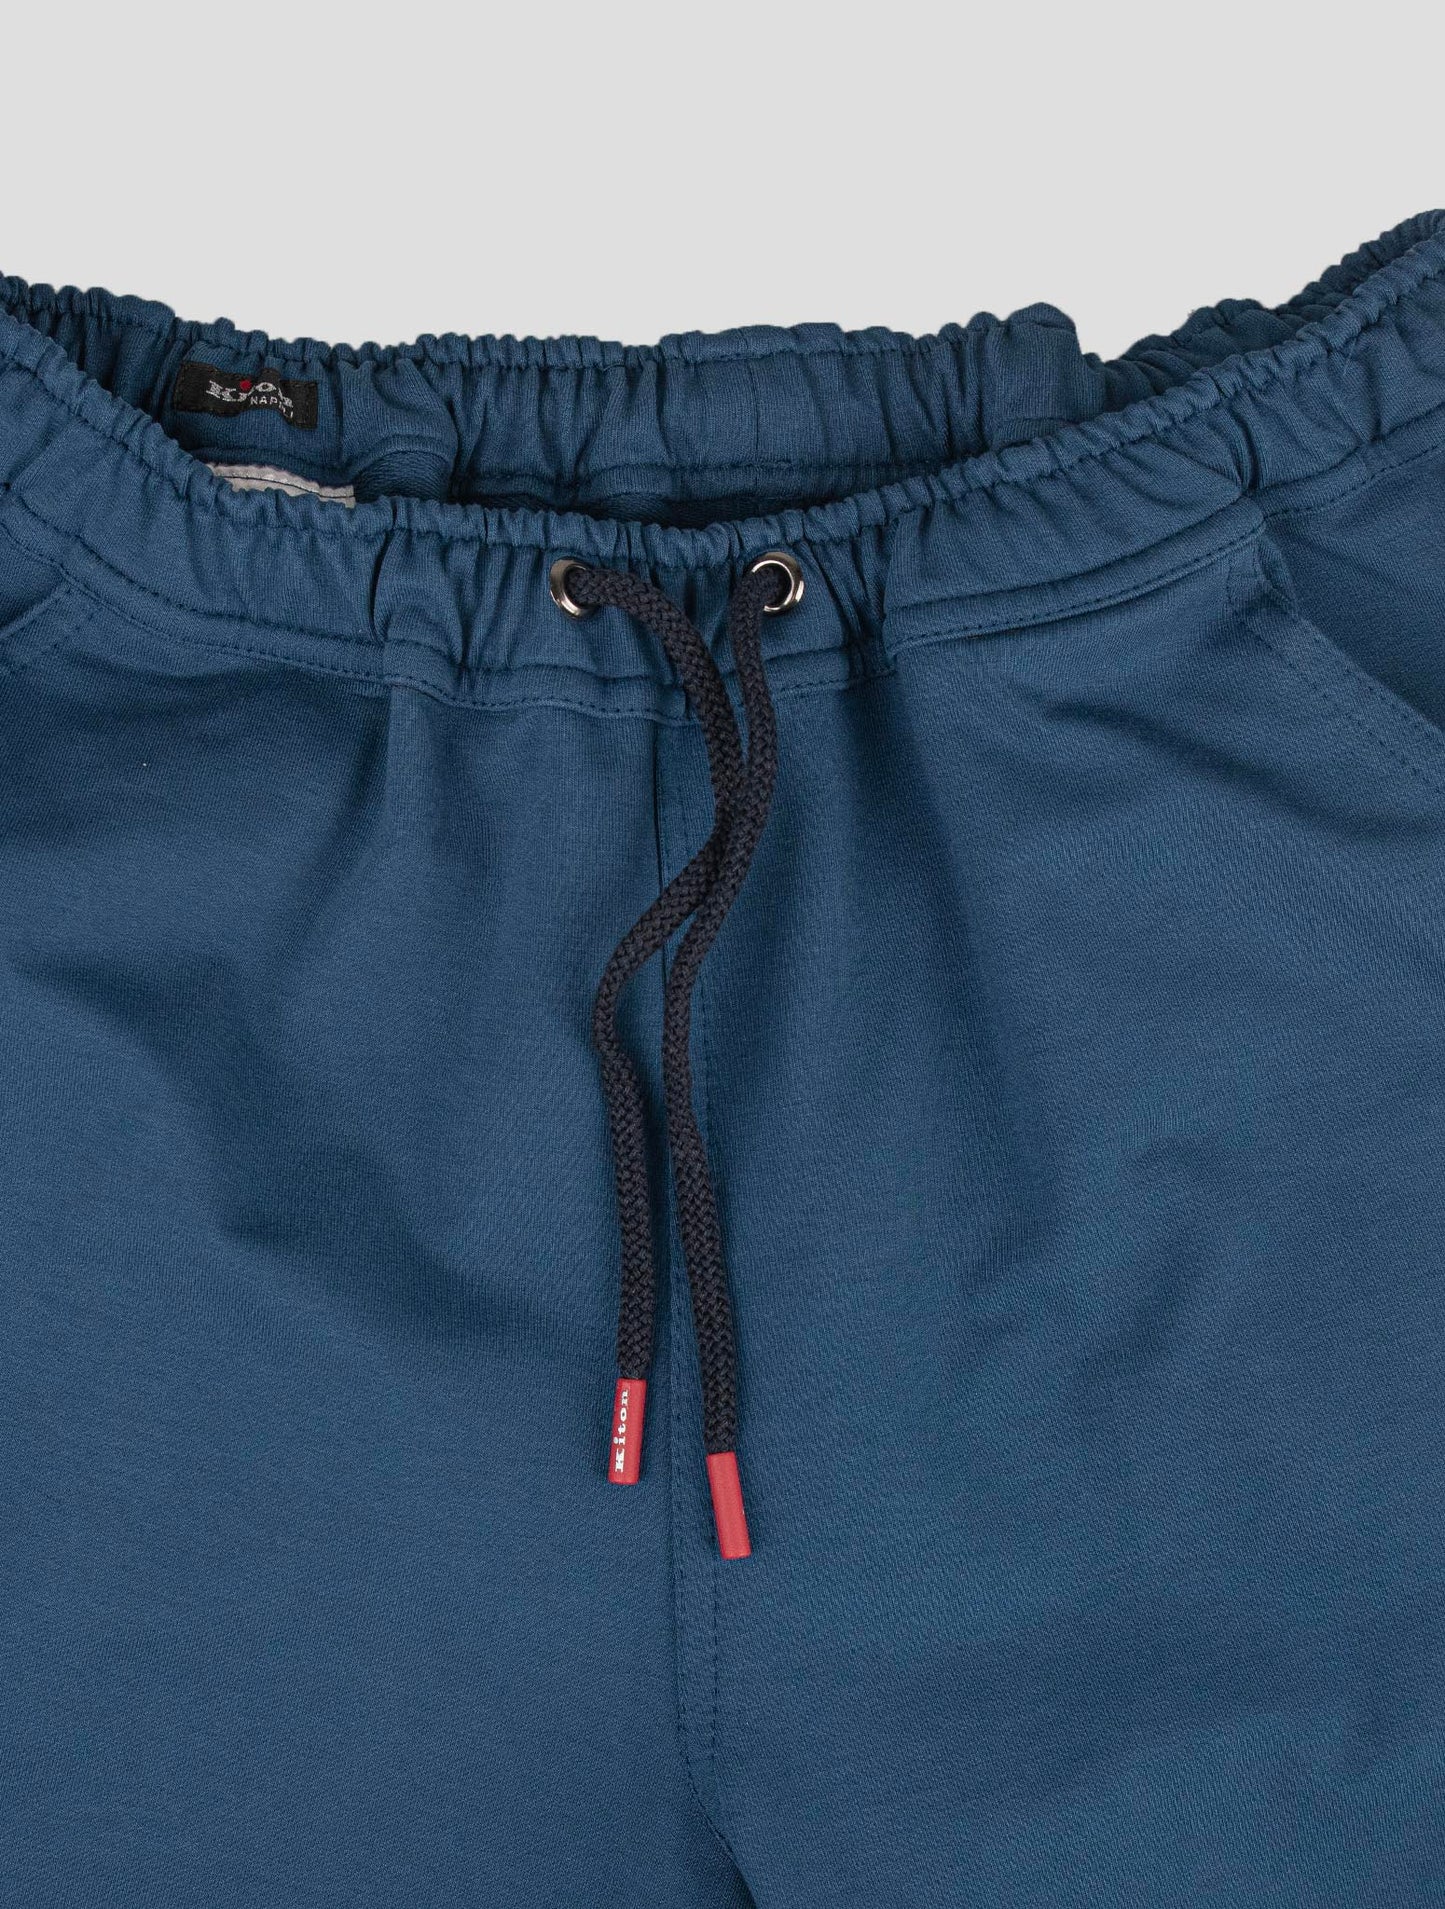 Kiton matchende outfit - flerfarve Mariano og blå korte bukser træningsdragt